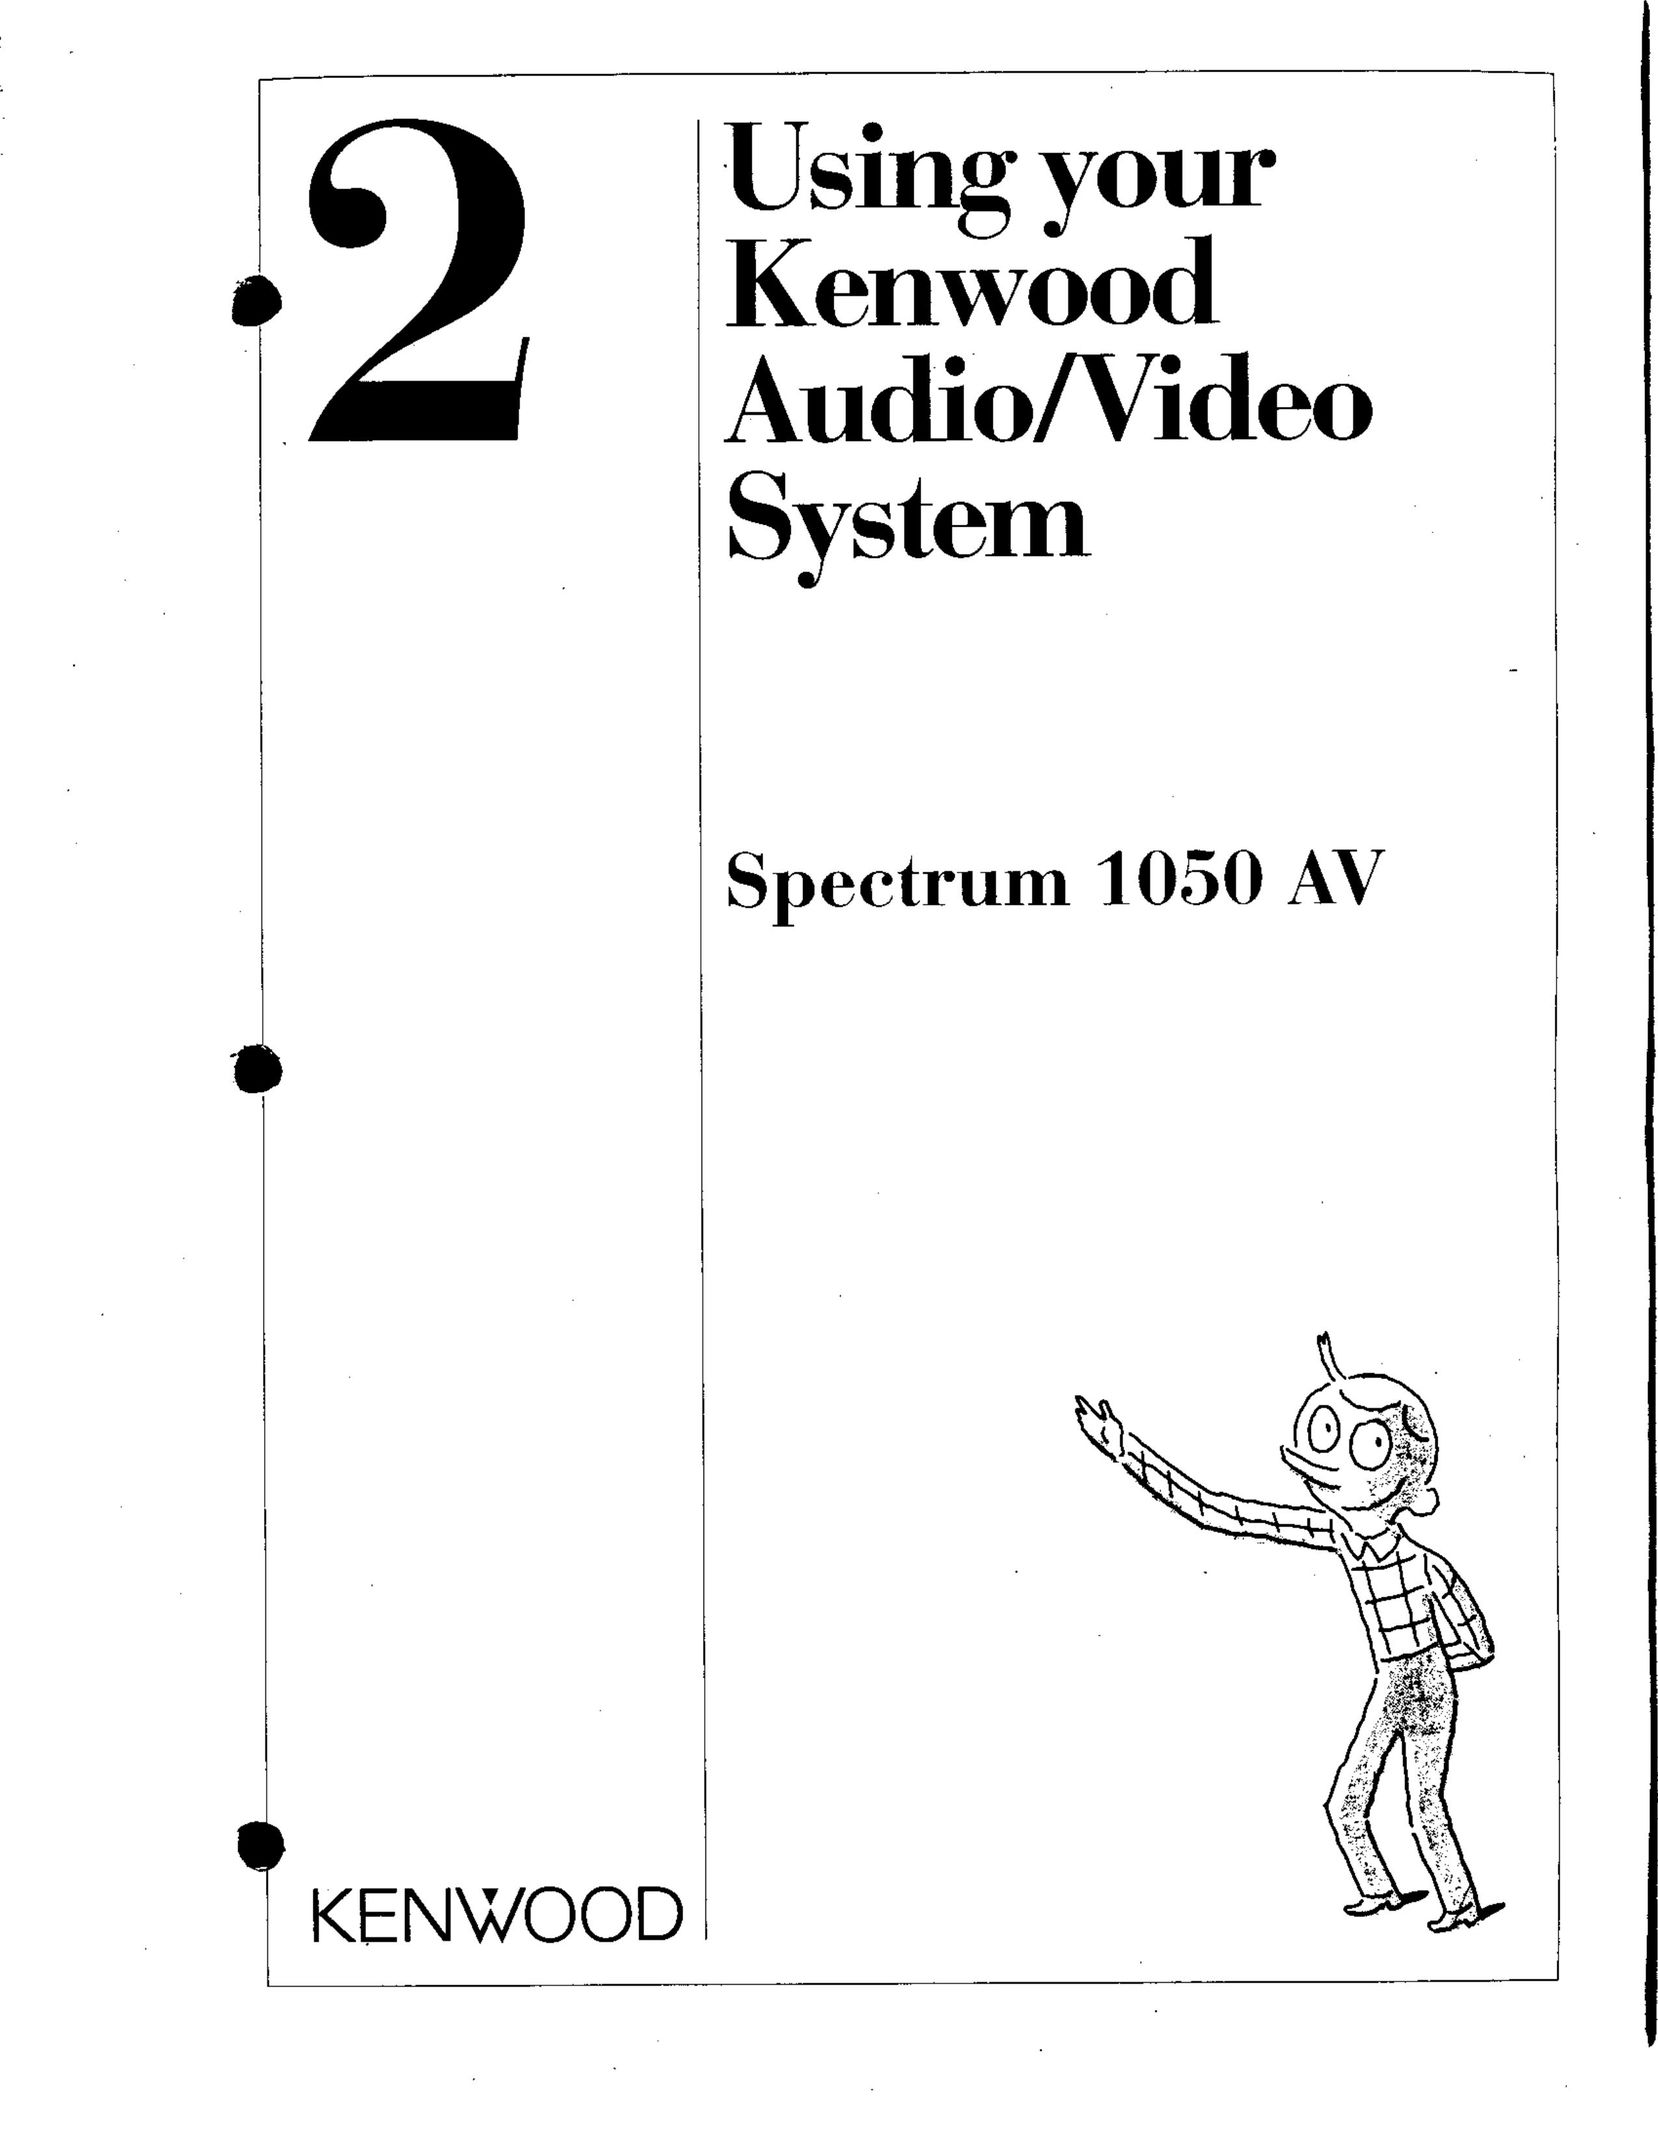 Kenwood 1050 AV Home Theater System User Manual